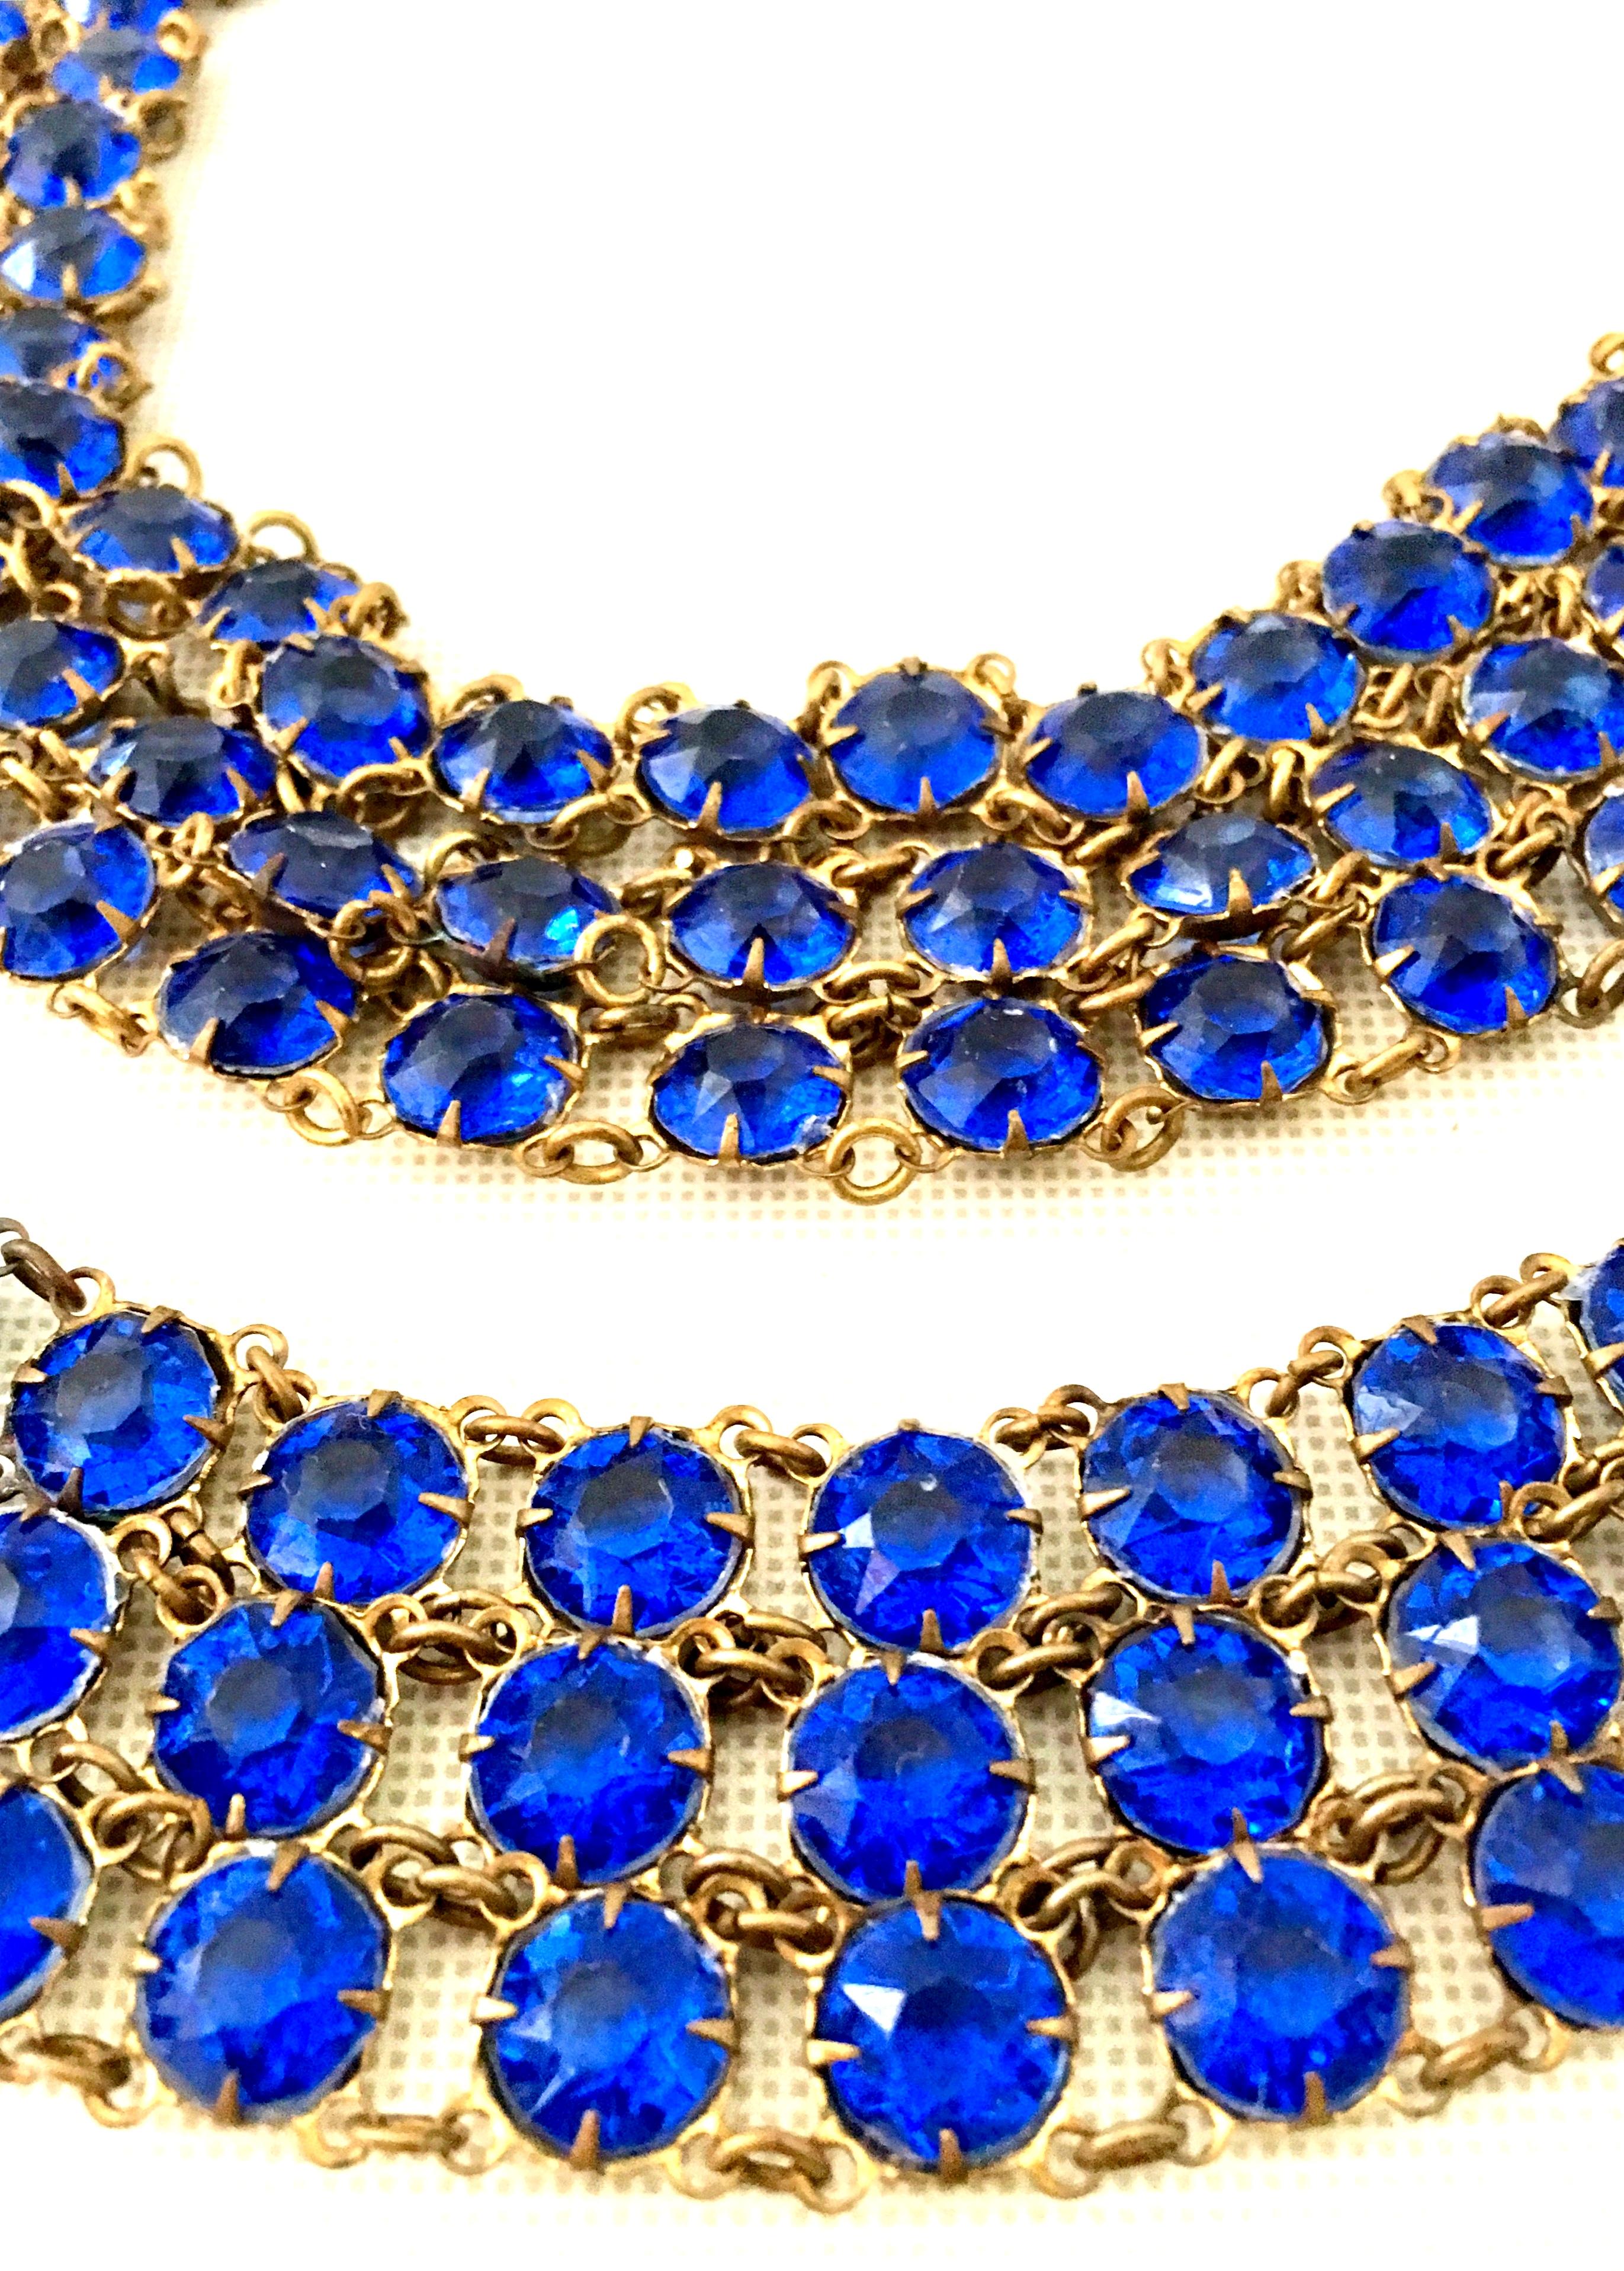 Antique Gilt Gold Sapphire Blue Faceted Glass Choker Necklace & Bracelet S/2 For Sale 2